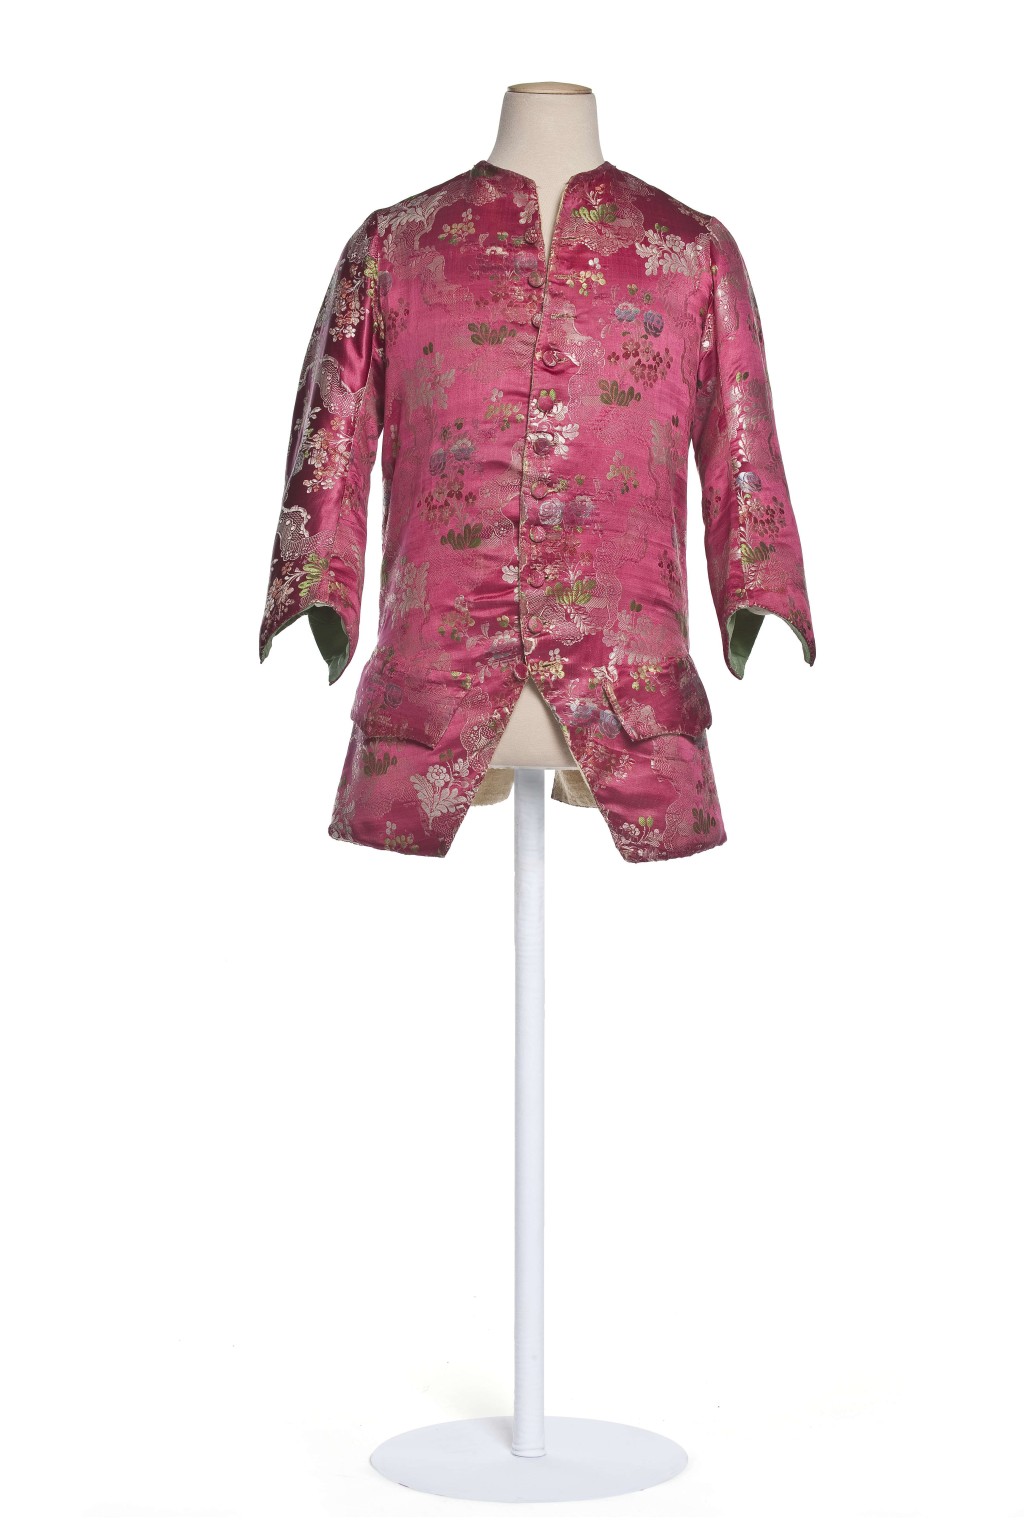 十八世纪的红色男士外套，采用法国丝绸面料，纹样仿中国丝绸。© 巴黎装饰 艺术博物馆 / 摄影:尚 · 托朗斯